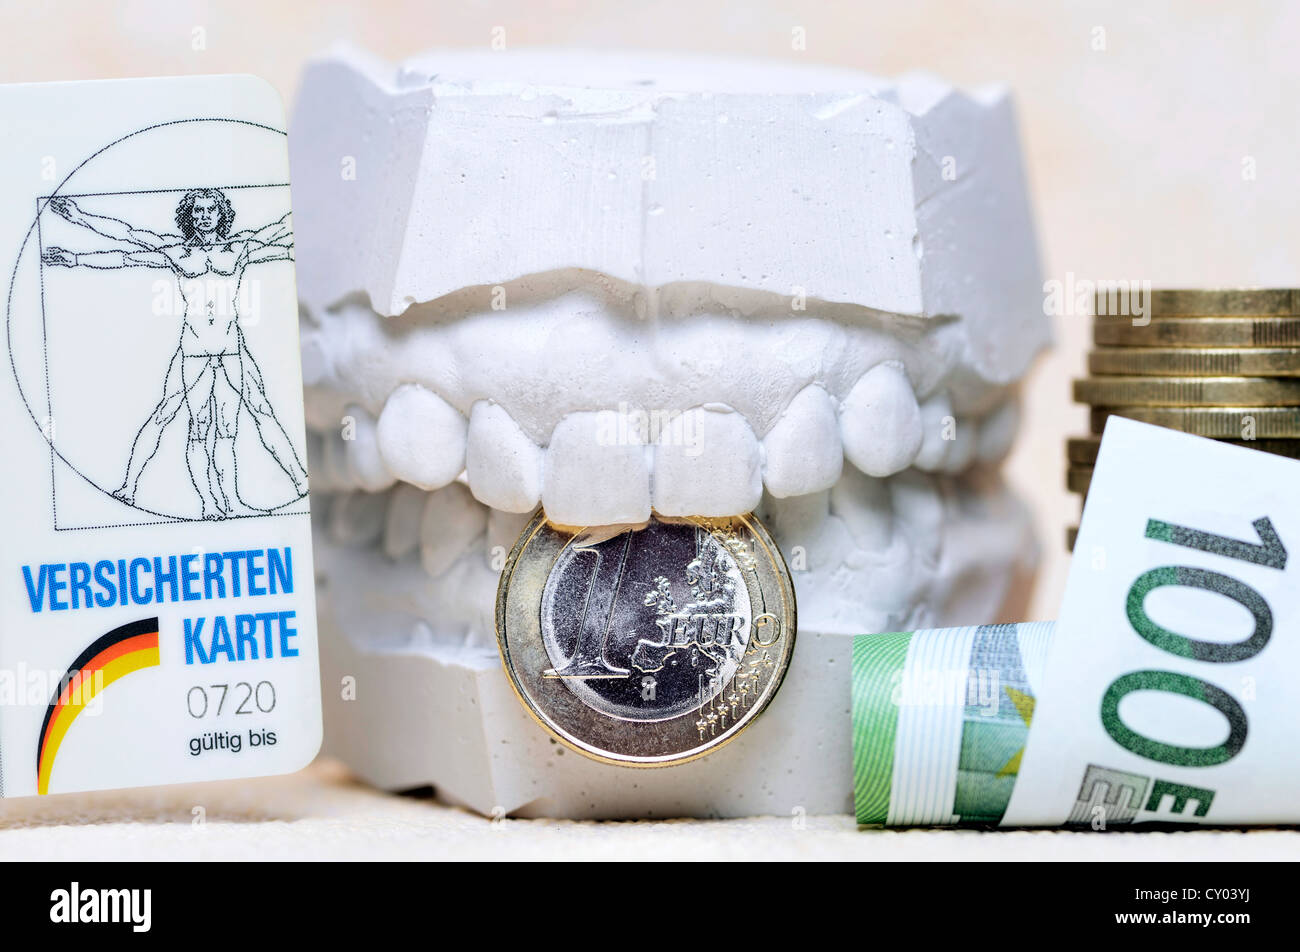 Versicherungskarte, dental Gips und Euro-Banknoten, Rechnungen symbolisches Bild für genauere Überwachung der Zahnärzte durch Gesundheit Stockfoto